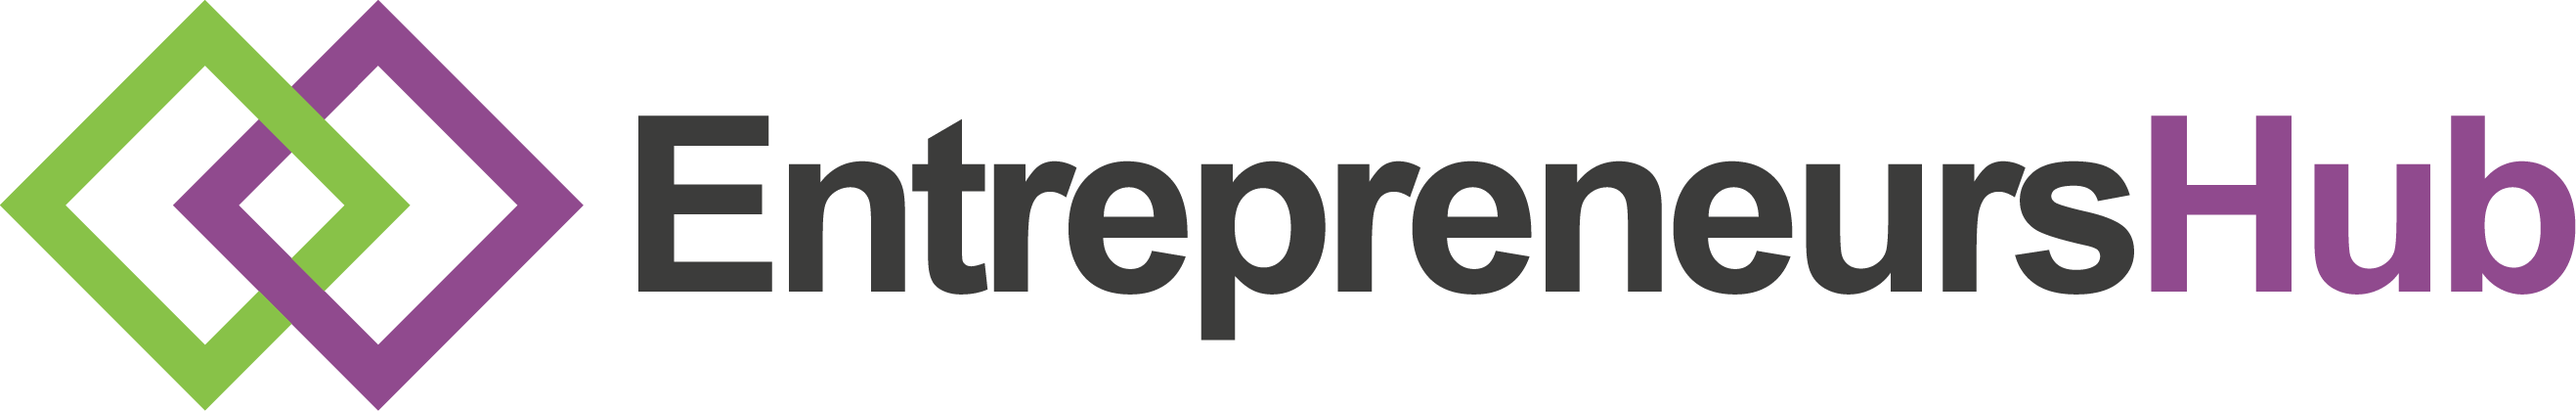 Entrepreneurs Hub Logo